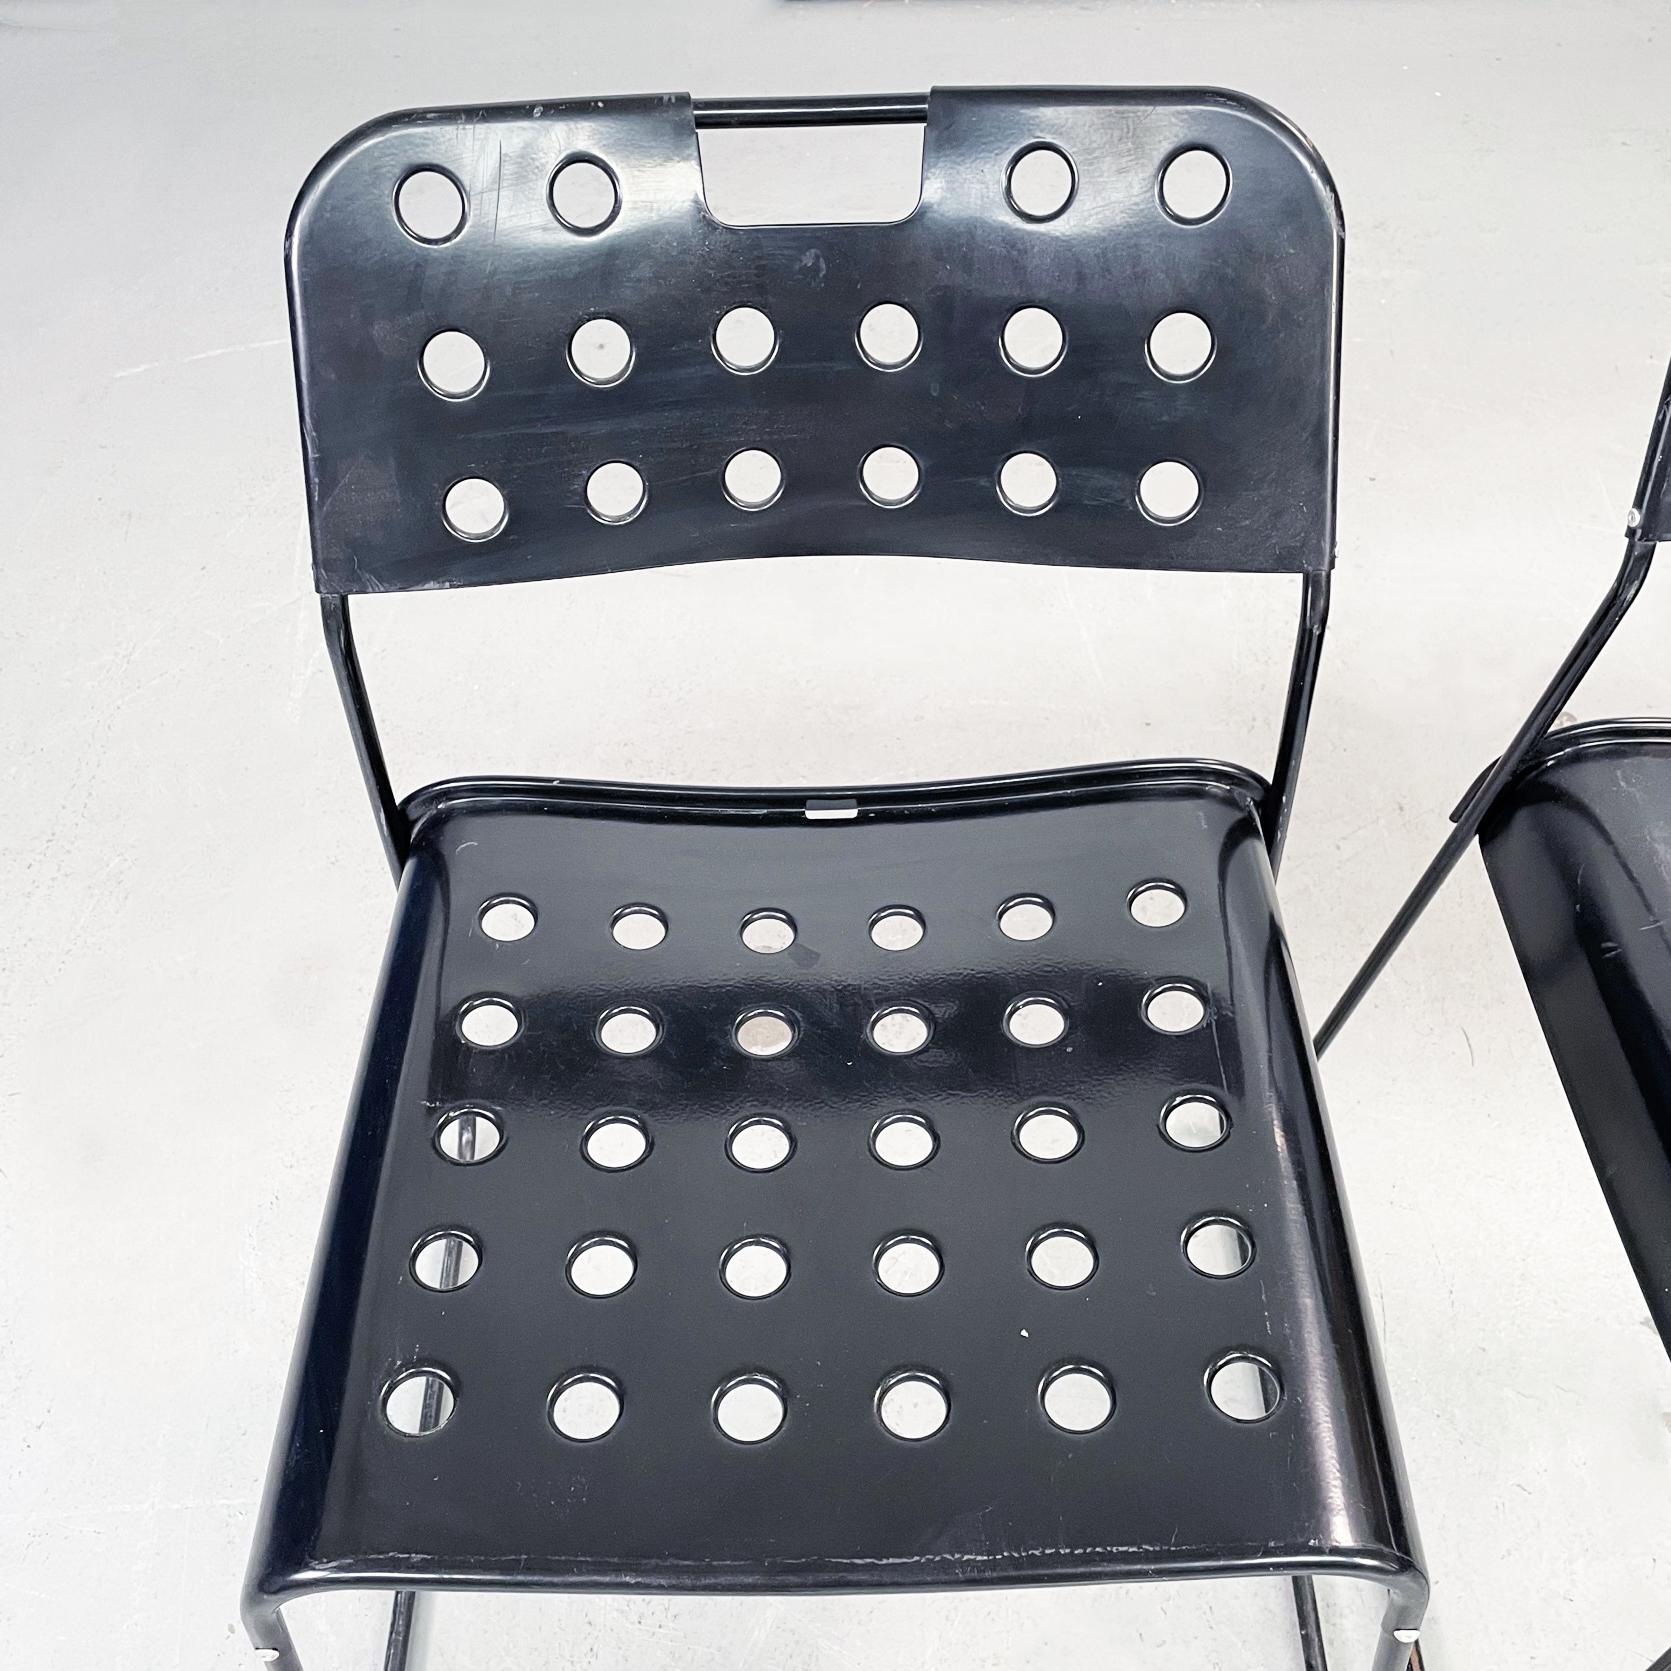 Italian Modern Black Steel Chairs Omstak by Rodney Kinsman Bieffeplast, 1970s For Sale 1